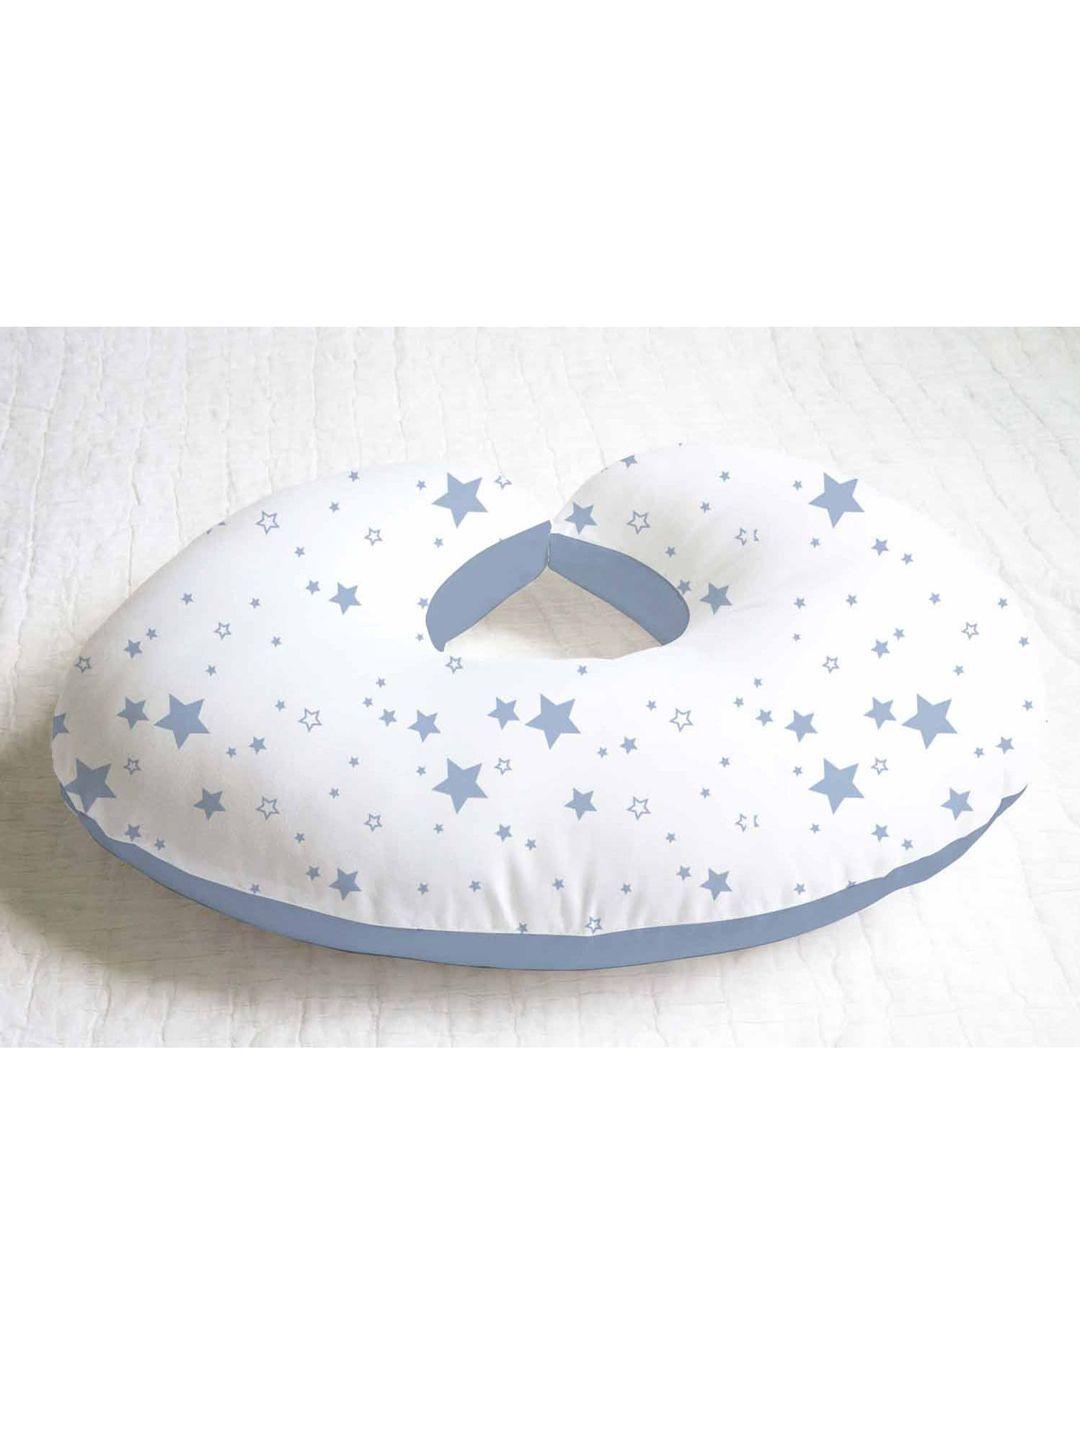 haus & kinder kids blue & white printed baby pillow